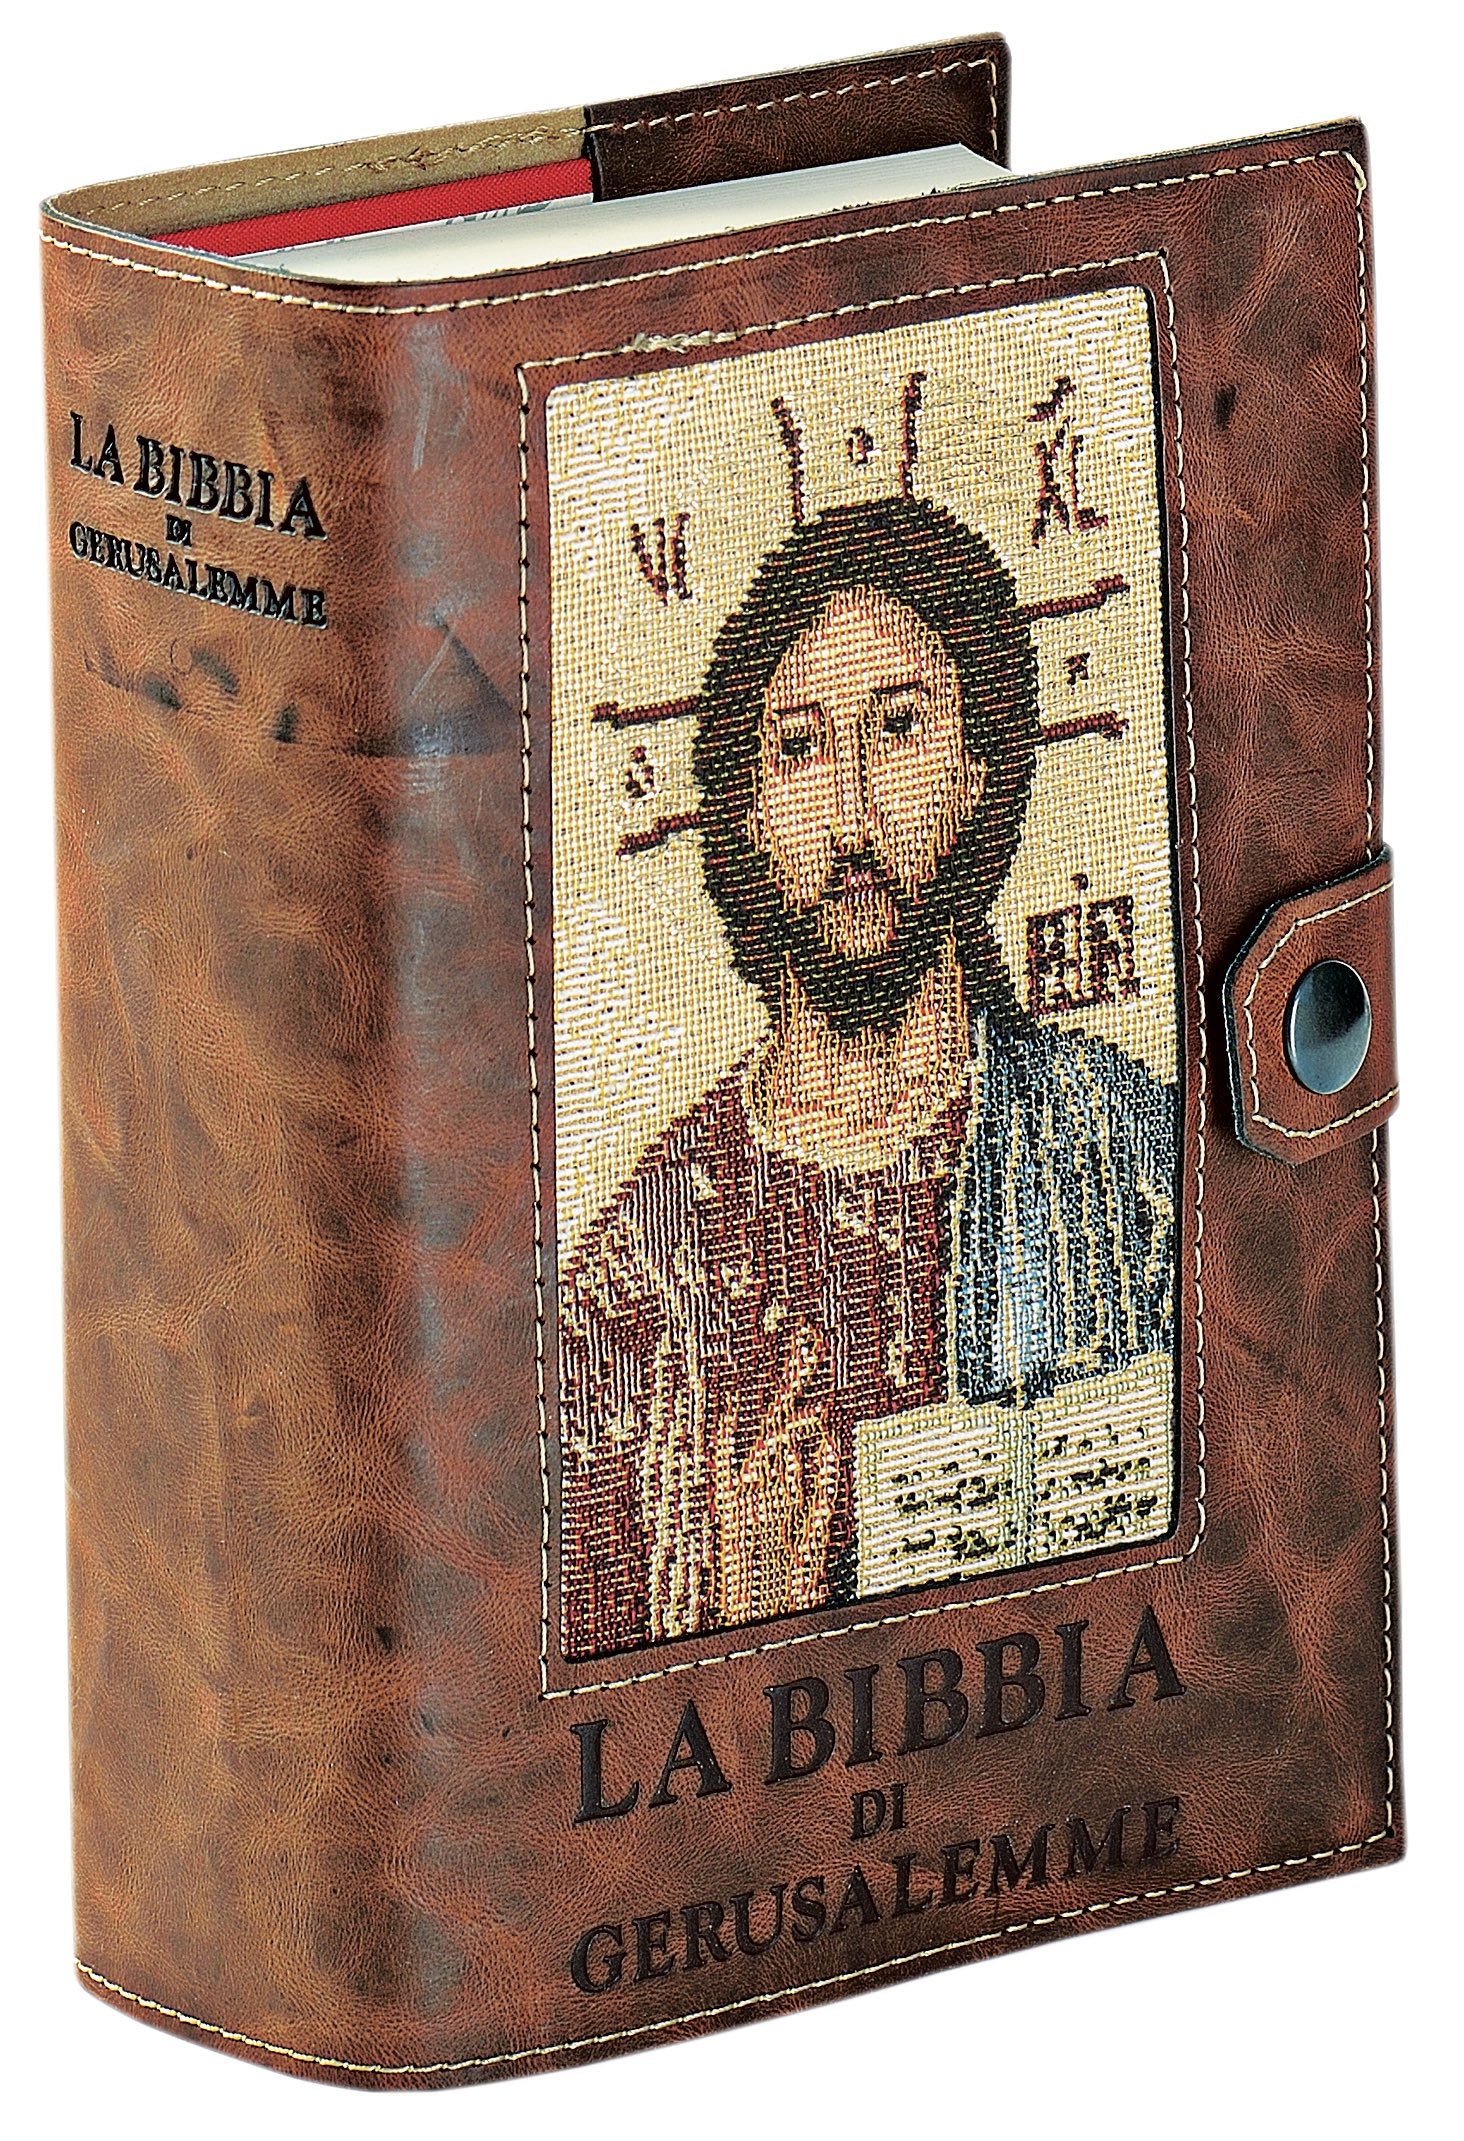 Bibbia di gerusalemme bottone Libri per la Liturgia